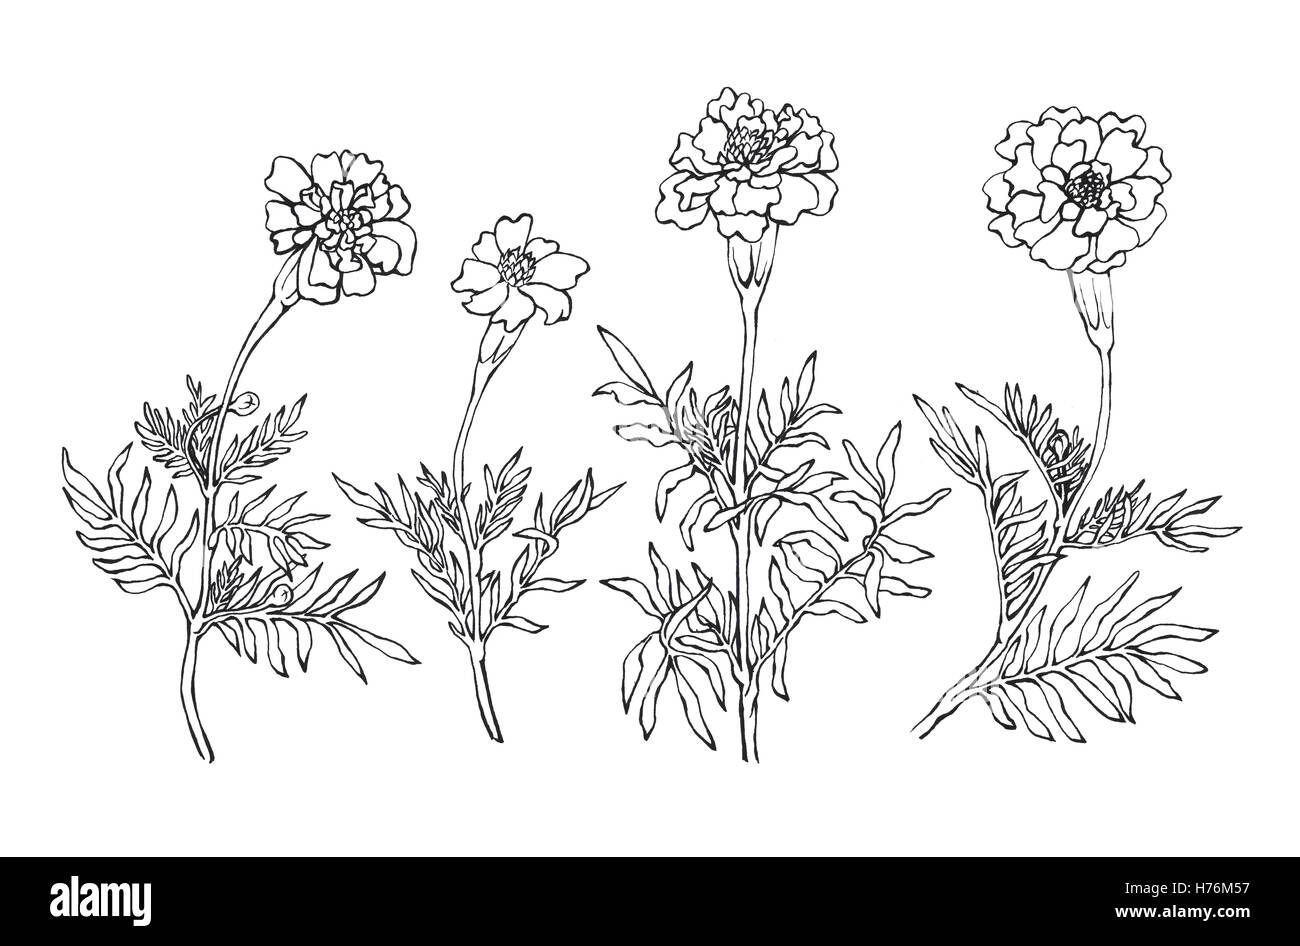 Tagetes patula, l'oeillet d'Inde. Jardin des plantes à fleurs. Noir et blanc dessiné à la main sur l'illustration. background blanc Banque D'Images